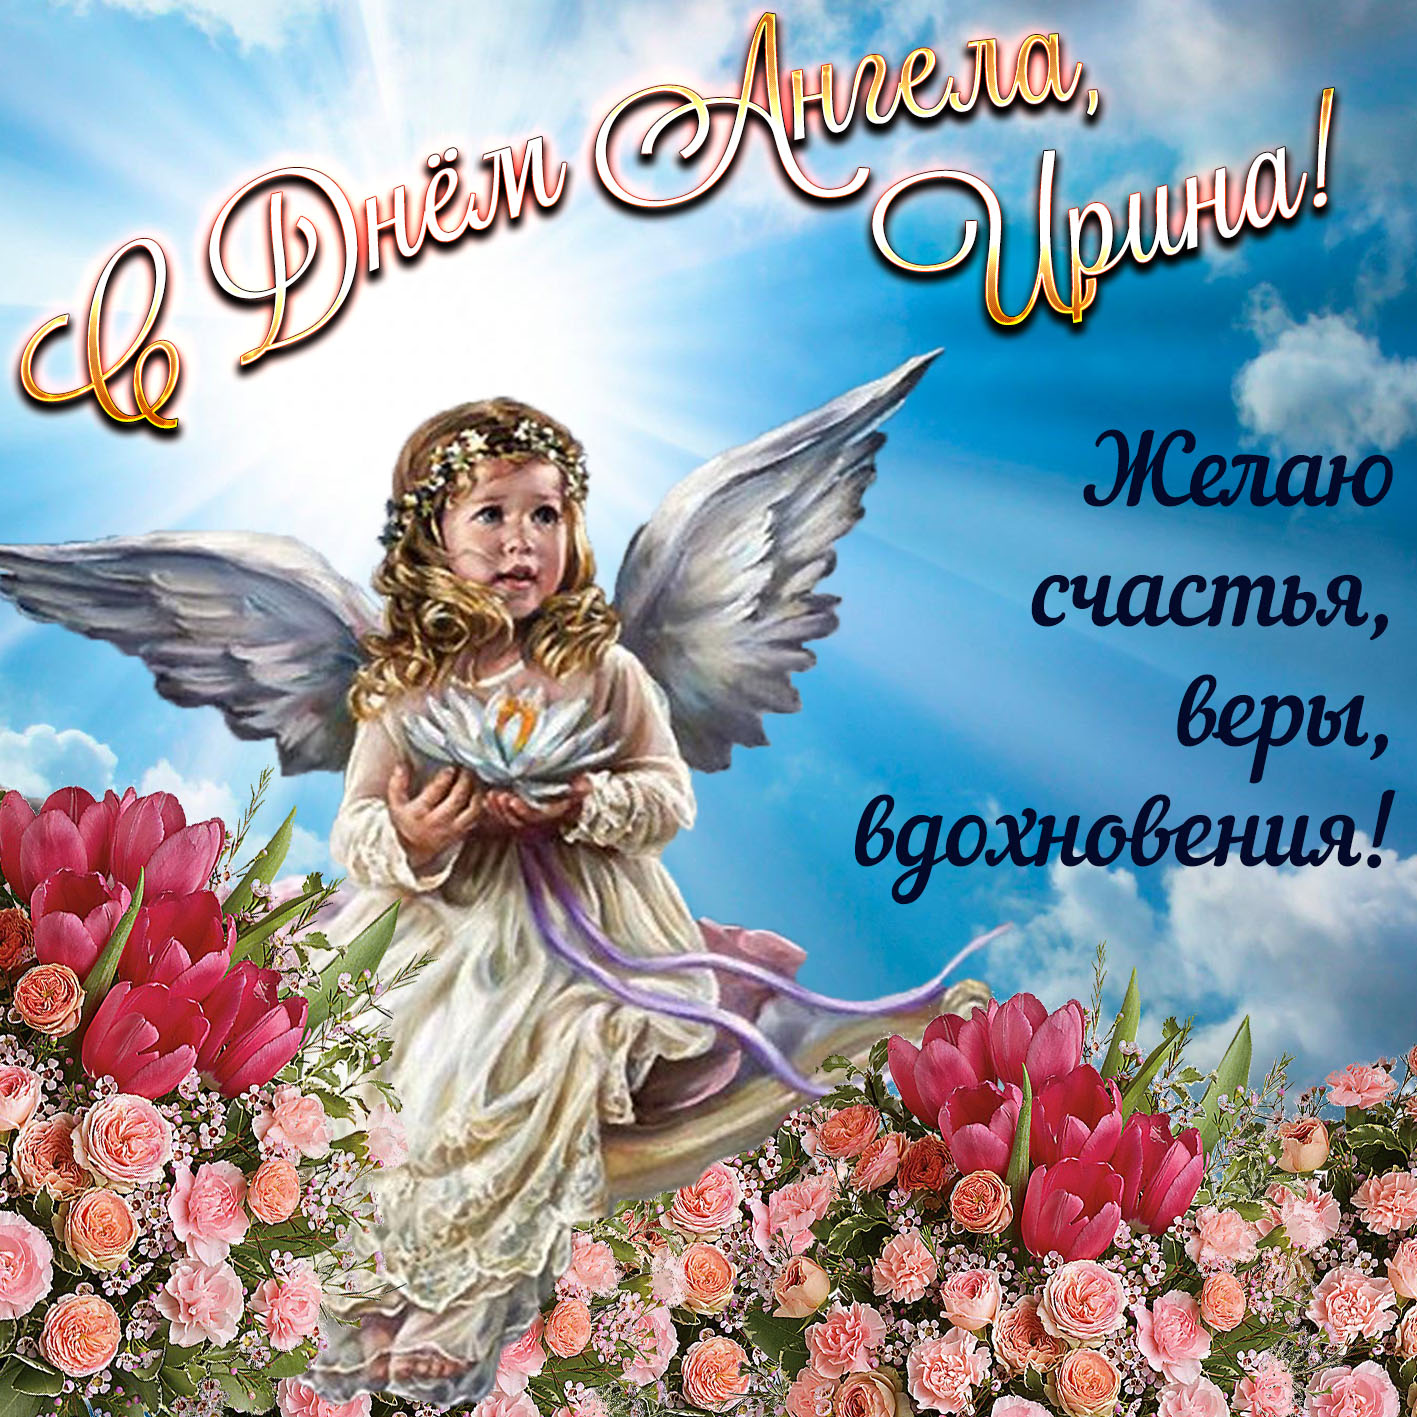 Великолепная открытка с днем ангела, ирина